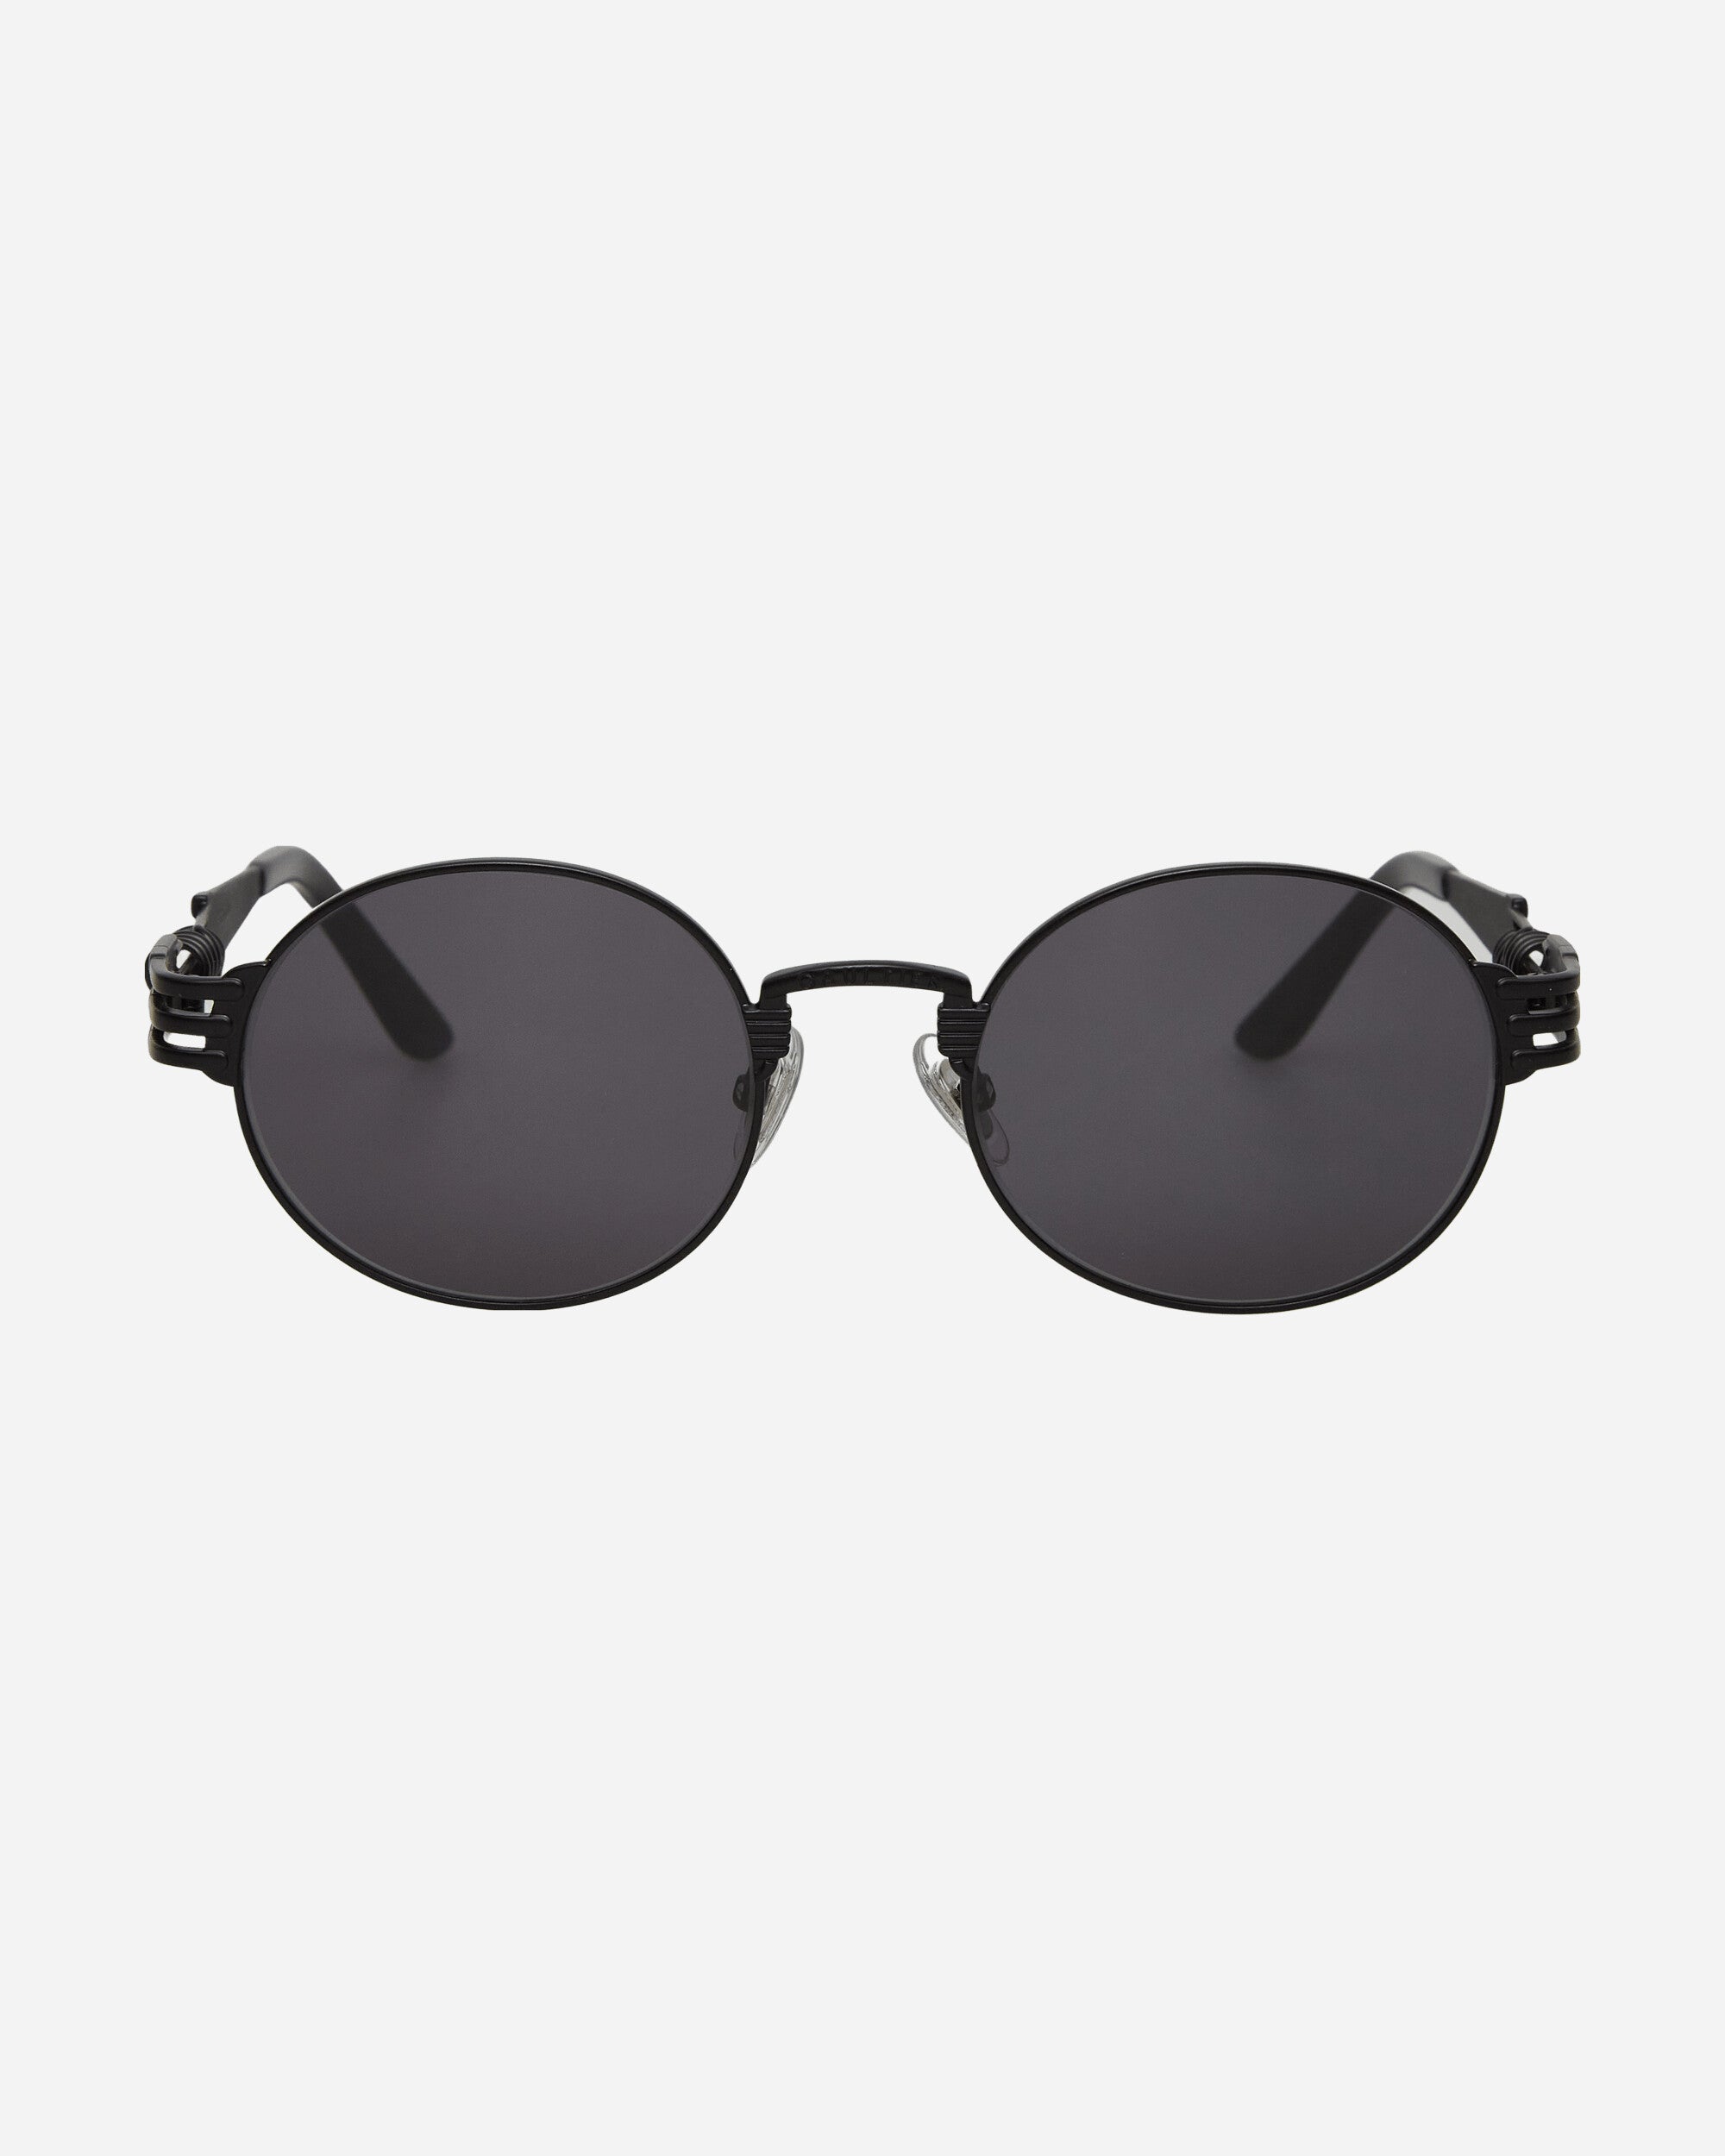 Jean Paul Gaultier Wmns Lunette Double Ressort Black Eyewear Sunglasses LU004-X024 00